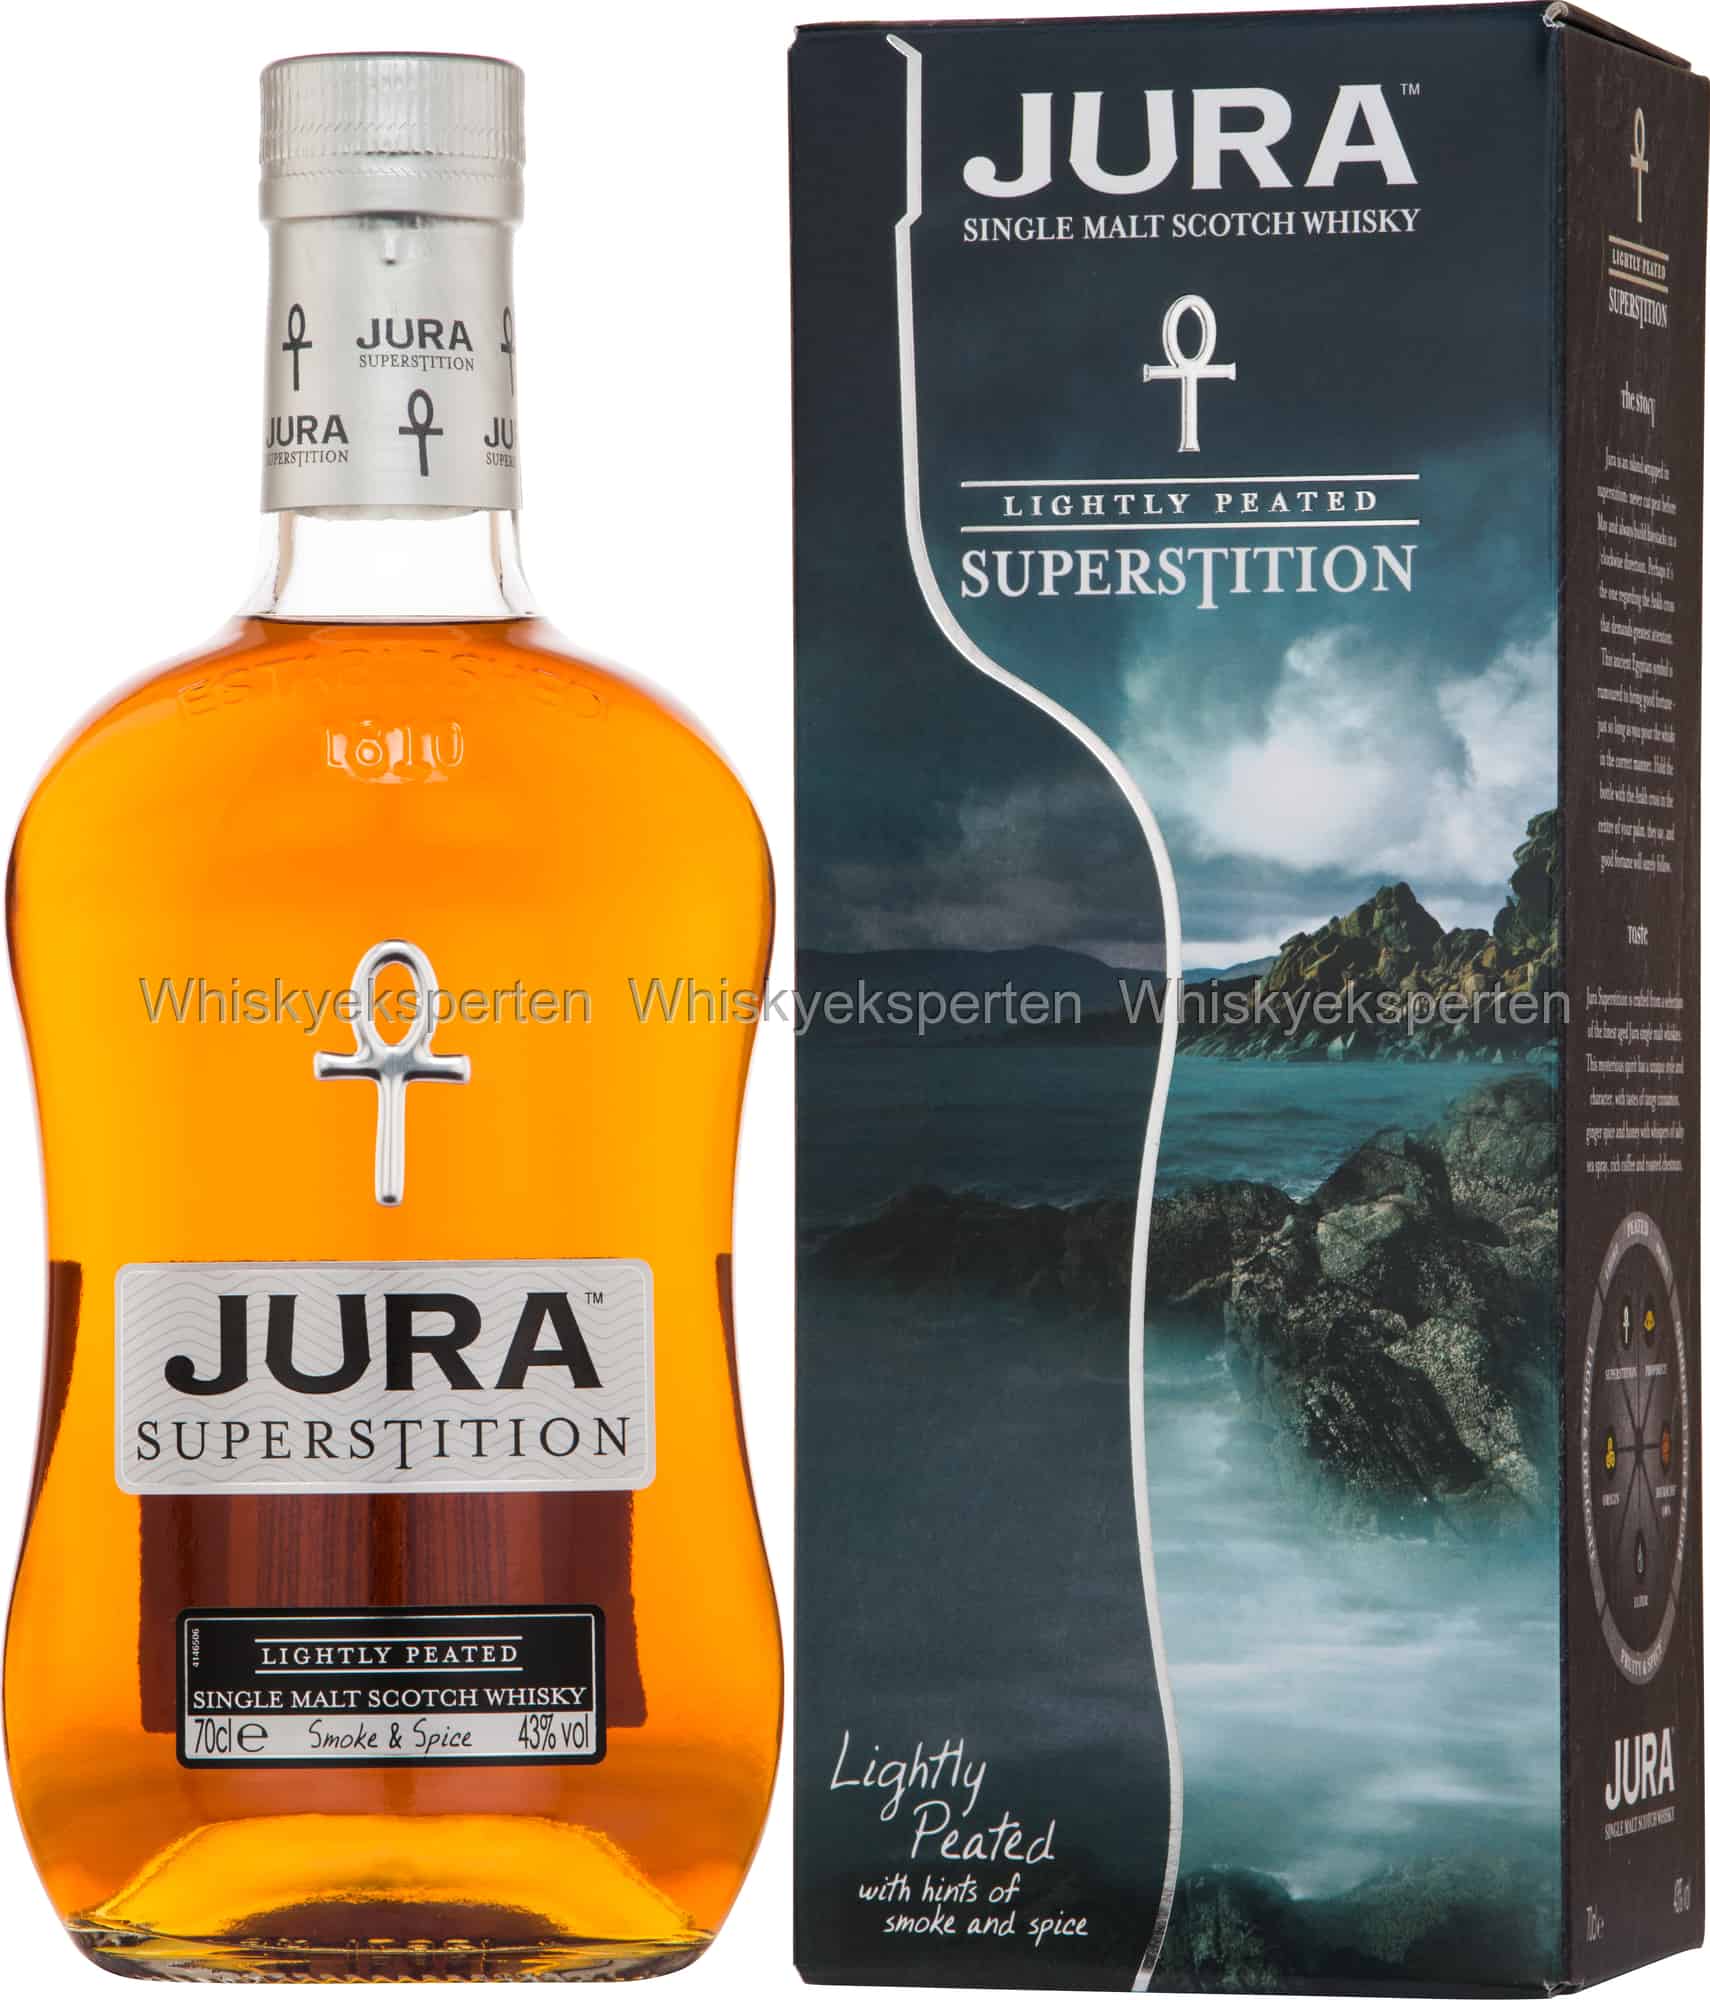 jura superstition single malt scotch whisky